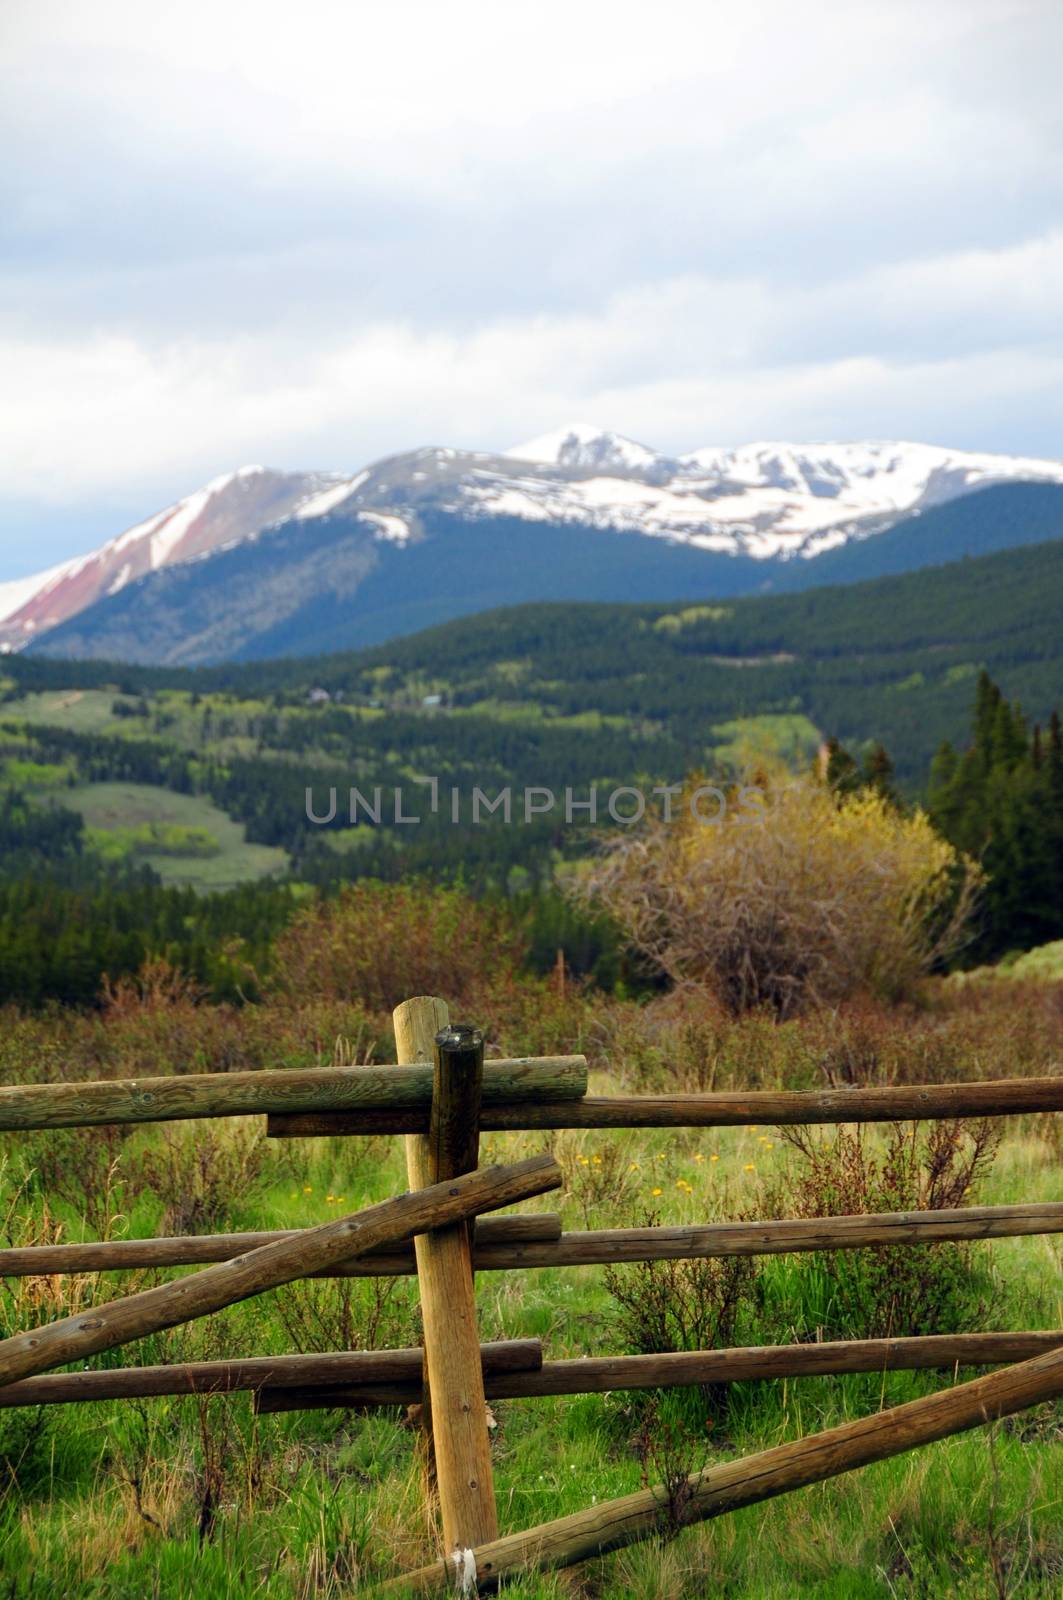 Colorado Landscape - Rocky Mountains. Colorado USA